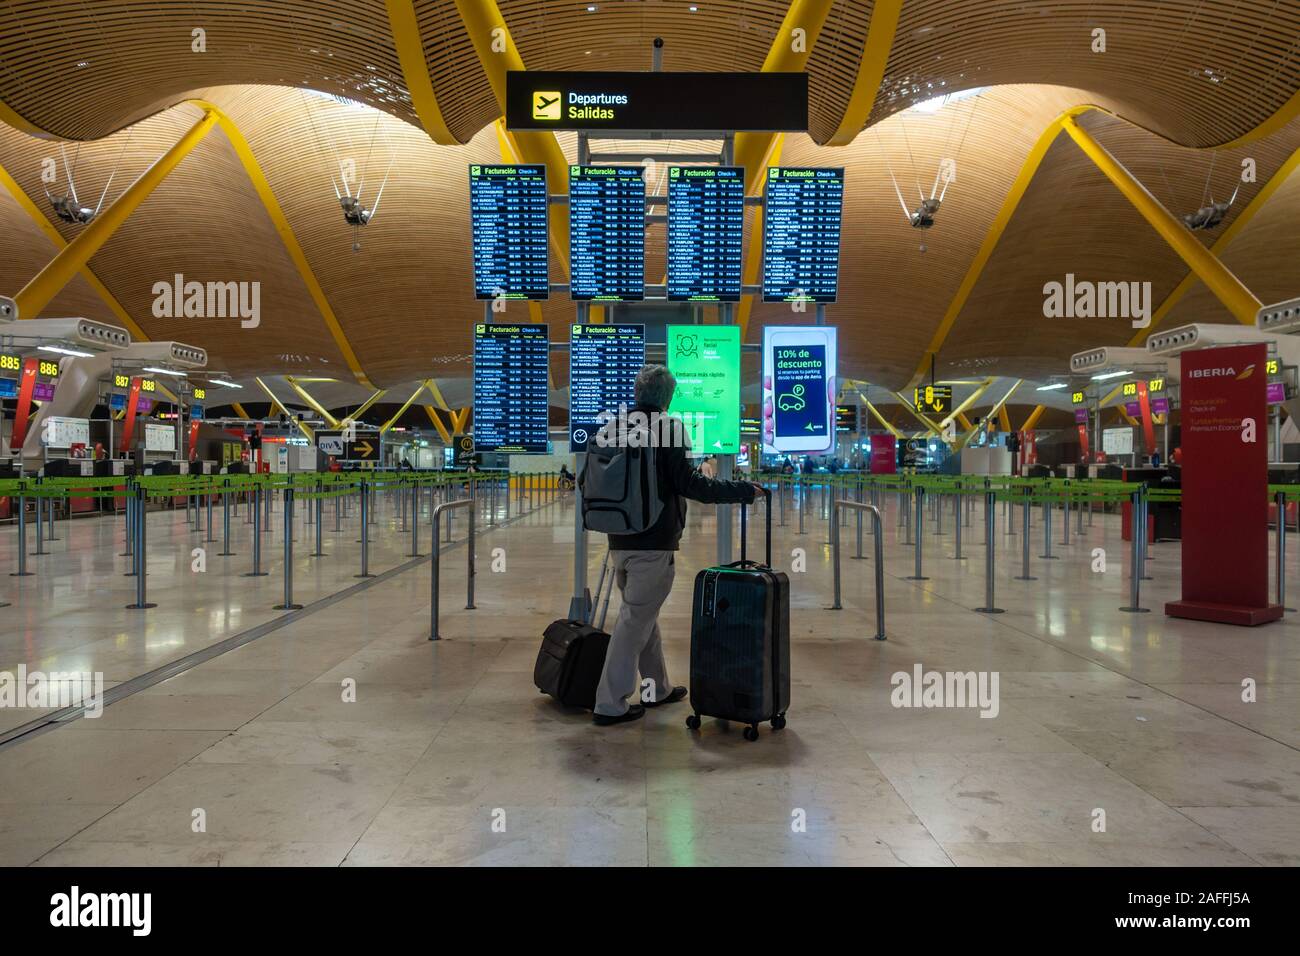 Ein Mann prüft elektronische Informationstafeln in Abflüge am Flughafen Madrid-Barajas Adolfo Suárez in Madrid, Spanien. Stockfoto